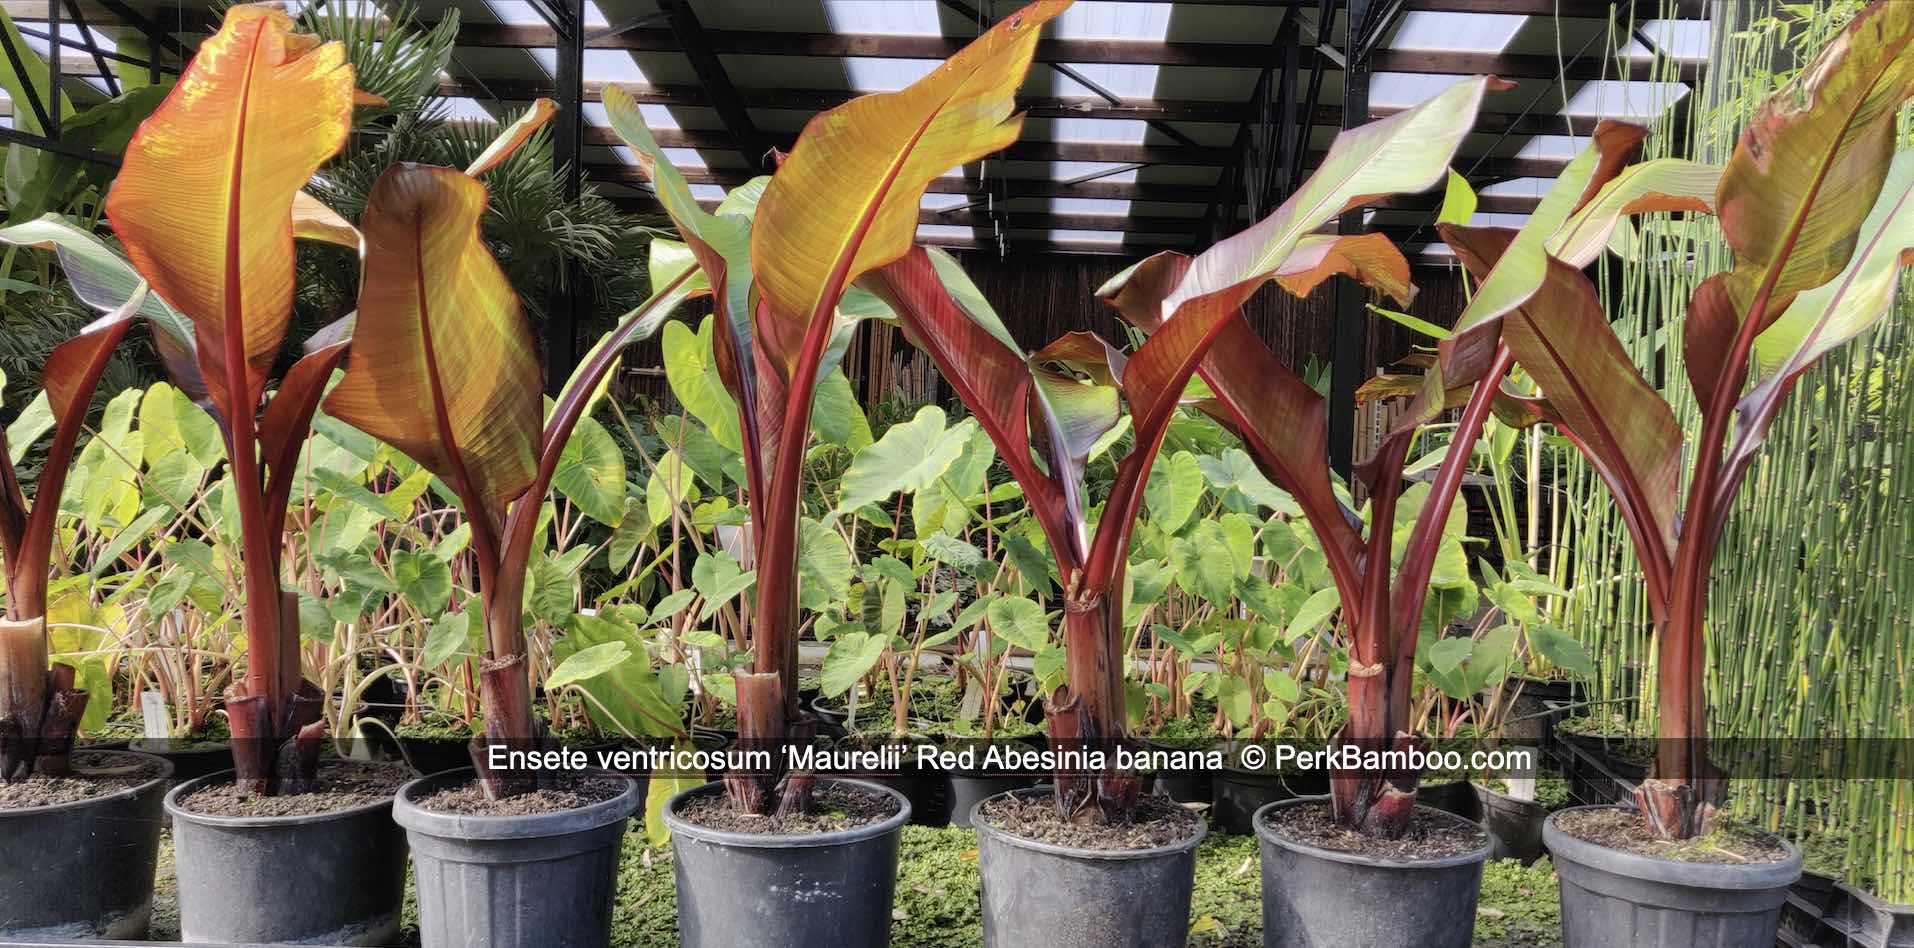 Rode Abesijnse banaan Ensete ventricosum Maurelii op voorraad in pot kopen buy PerkBamboo com